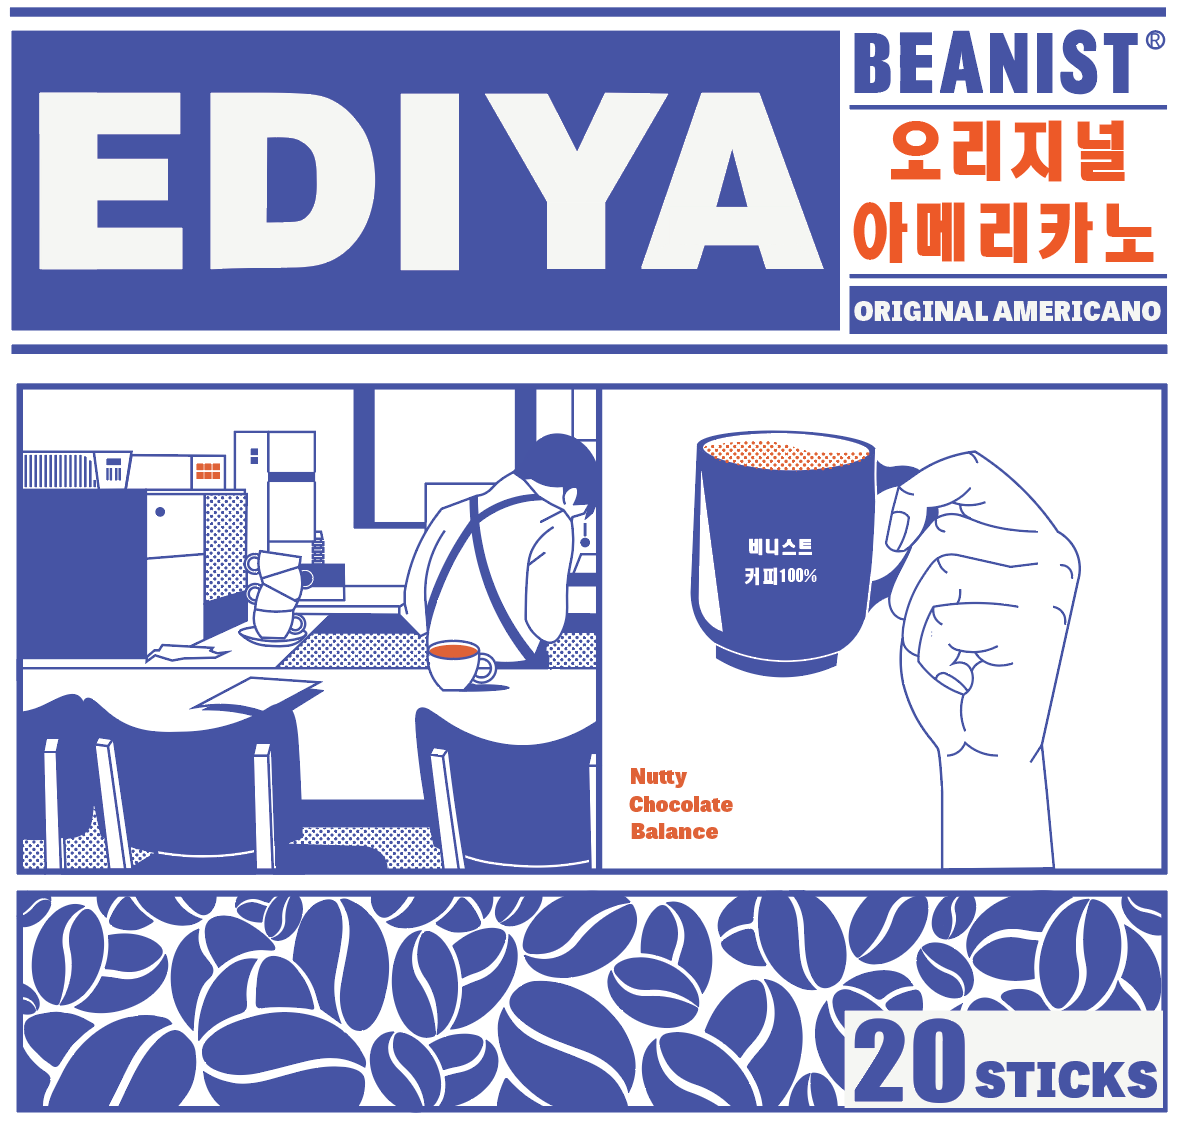 adobe illustrator Coffee coffee packaging design EDIYA korean package package design 